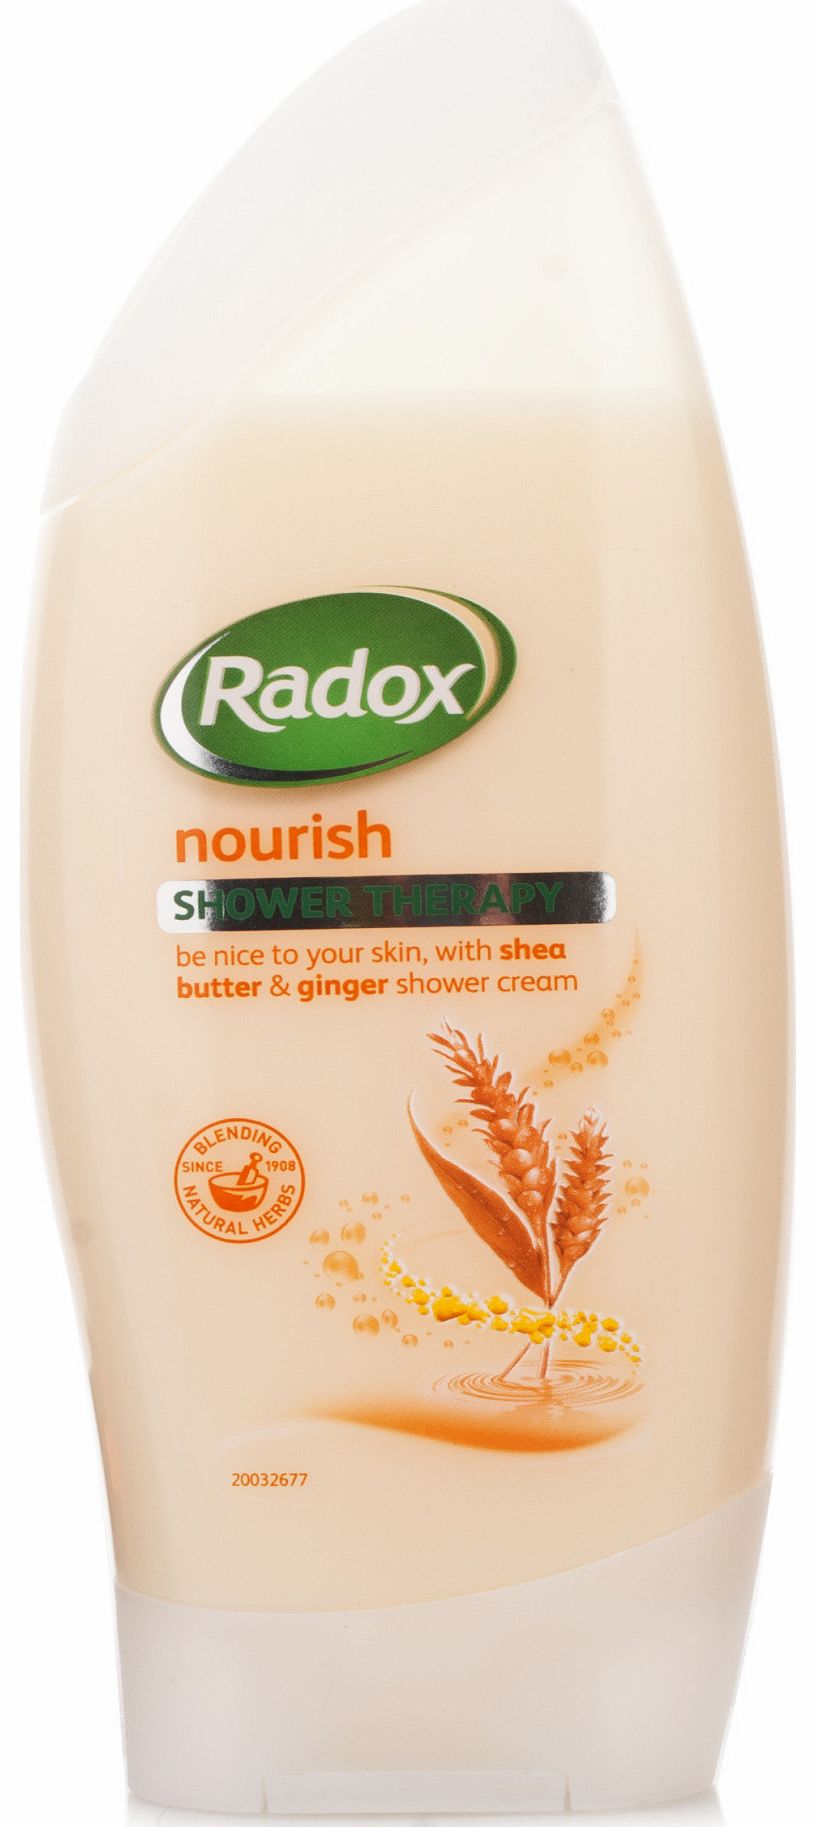 Nourish Shower Cream